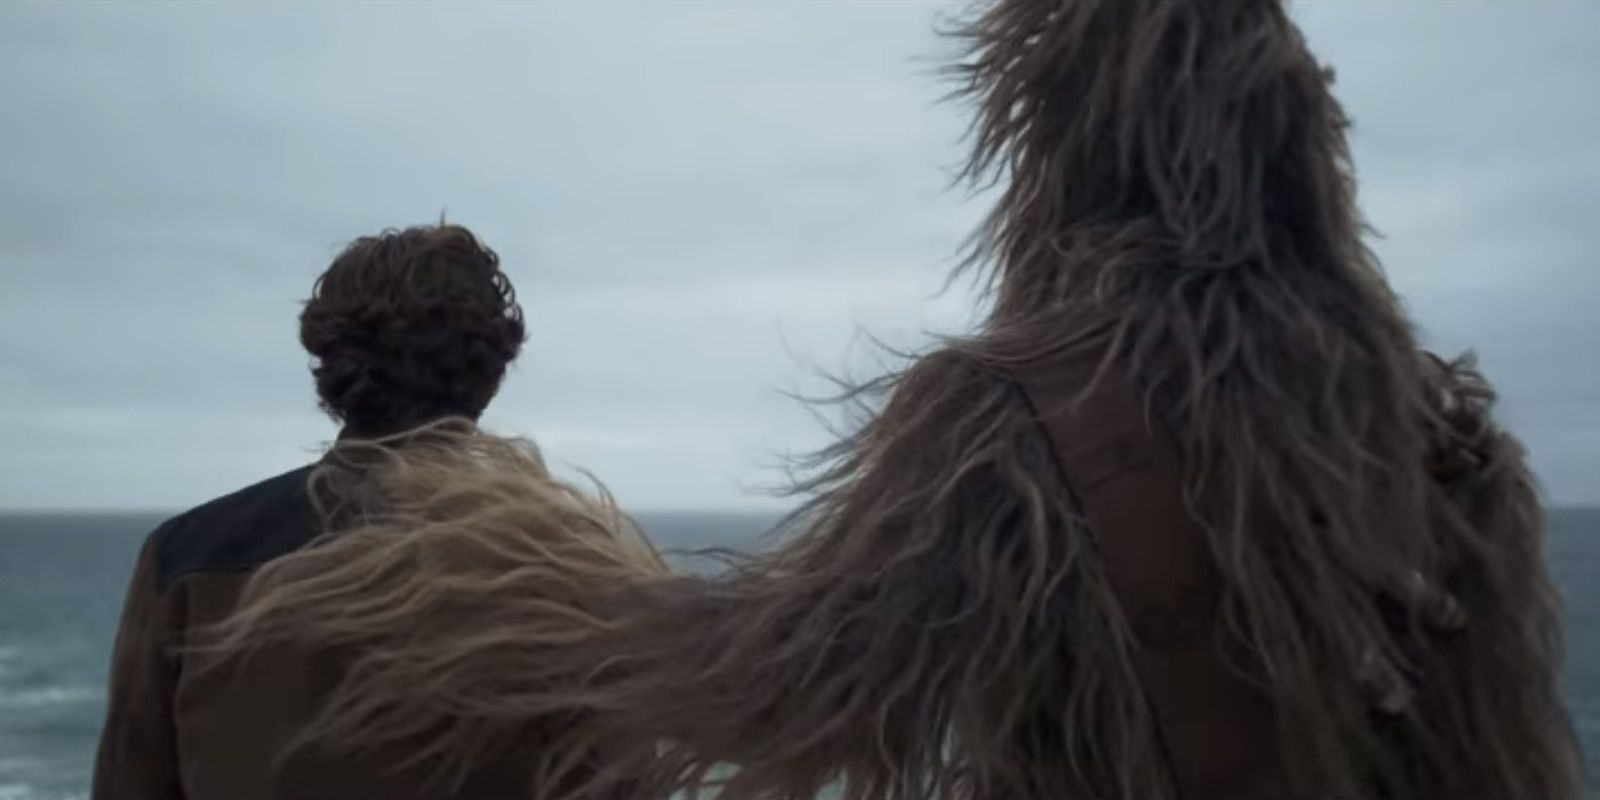 Solo A Star Wars Story Trailer Breakdown